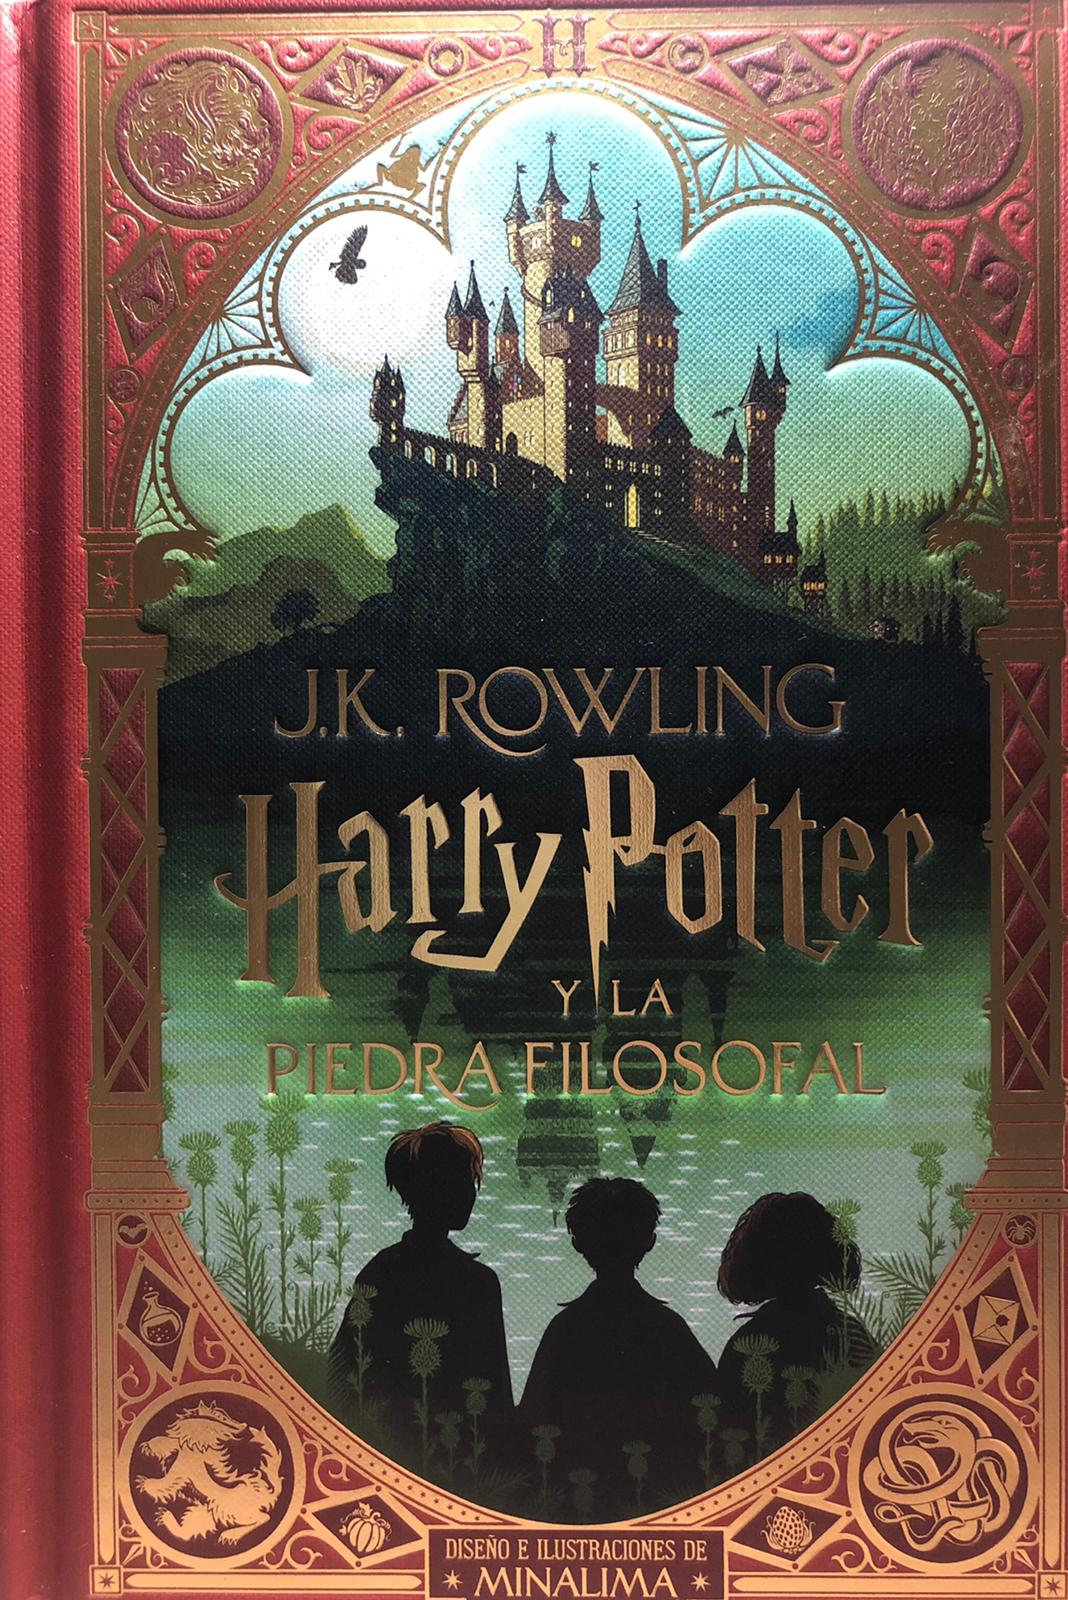 Harry Potter, la saga de libros que hizo leer a toda una generación